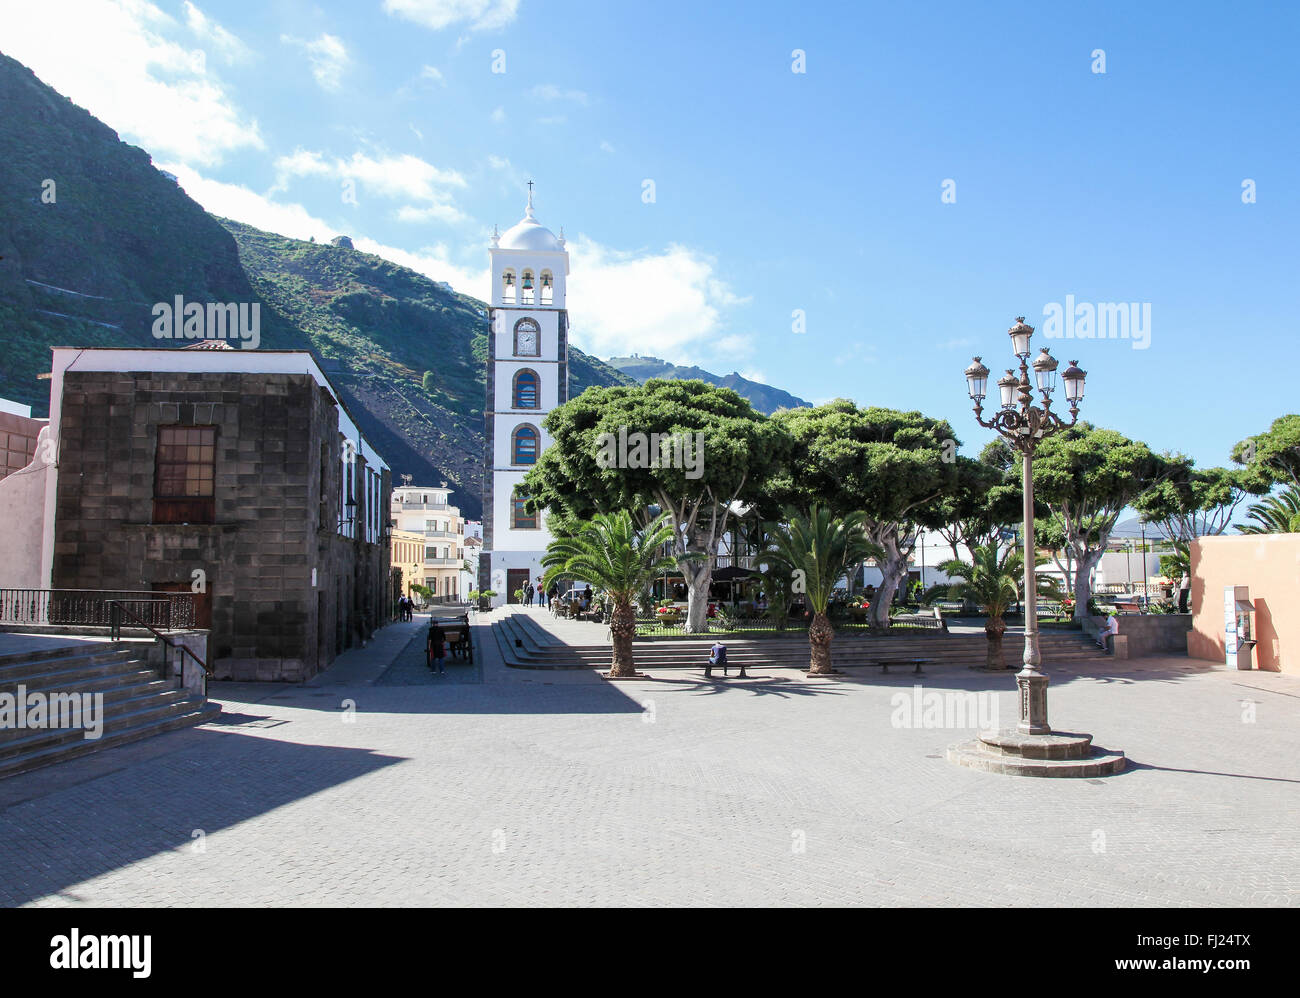 A Garachico, Spagna - 20 gennaio 2016: vista sul centro e la chiesa di Santa Ana a Garachico, Tenerife, Isole Canarie, Spai Foto Stock